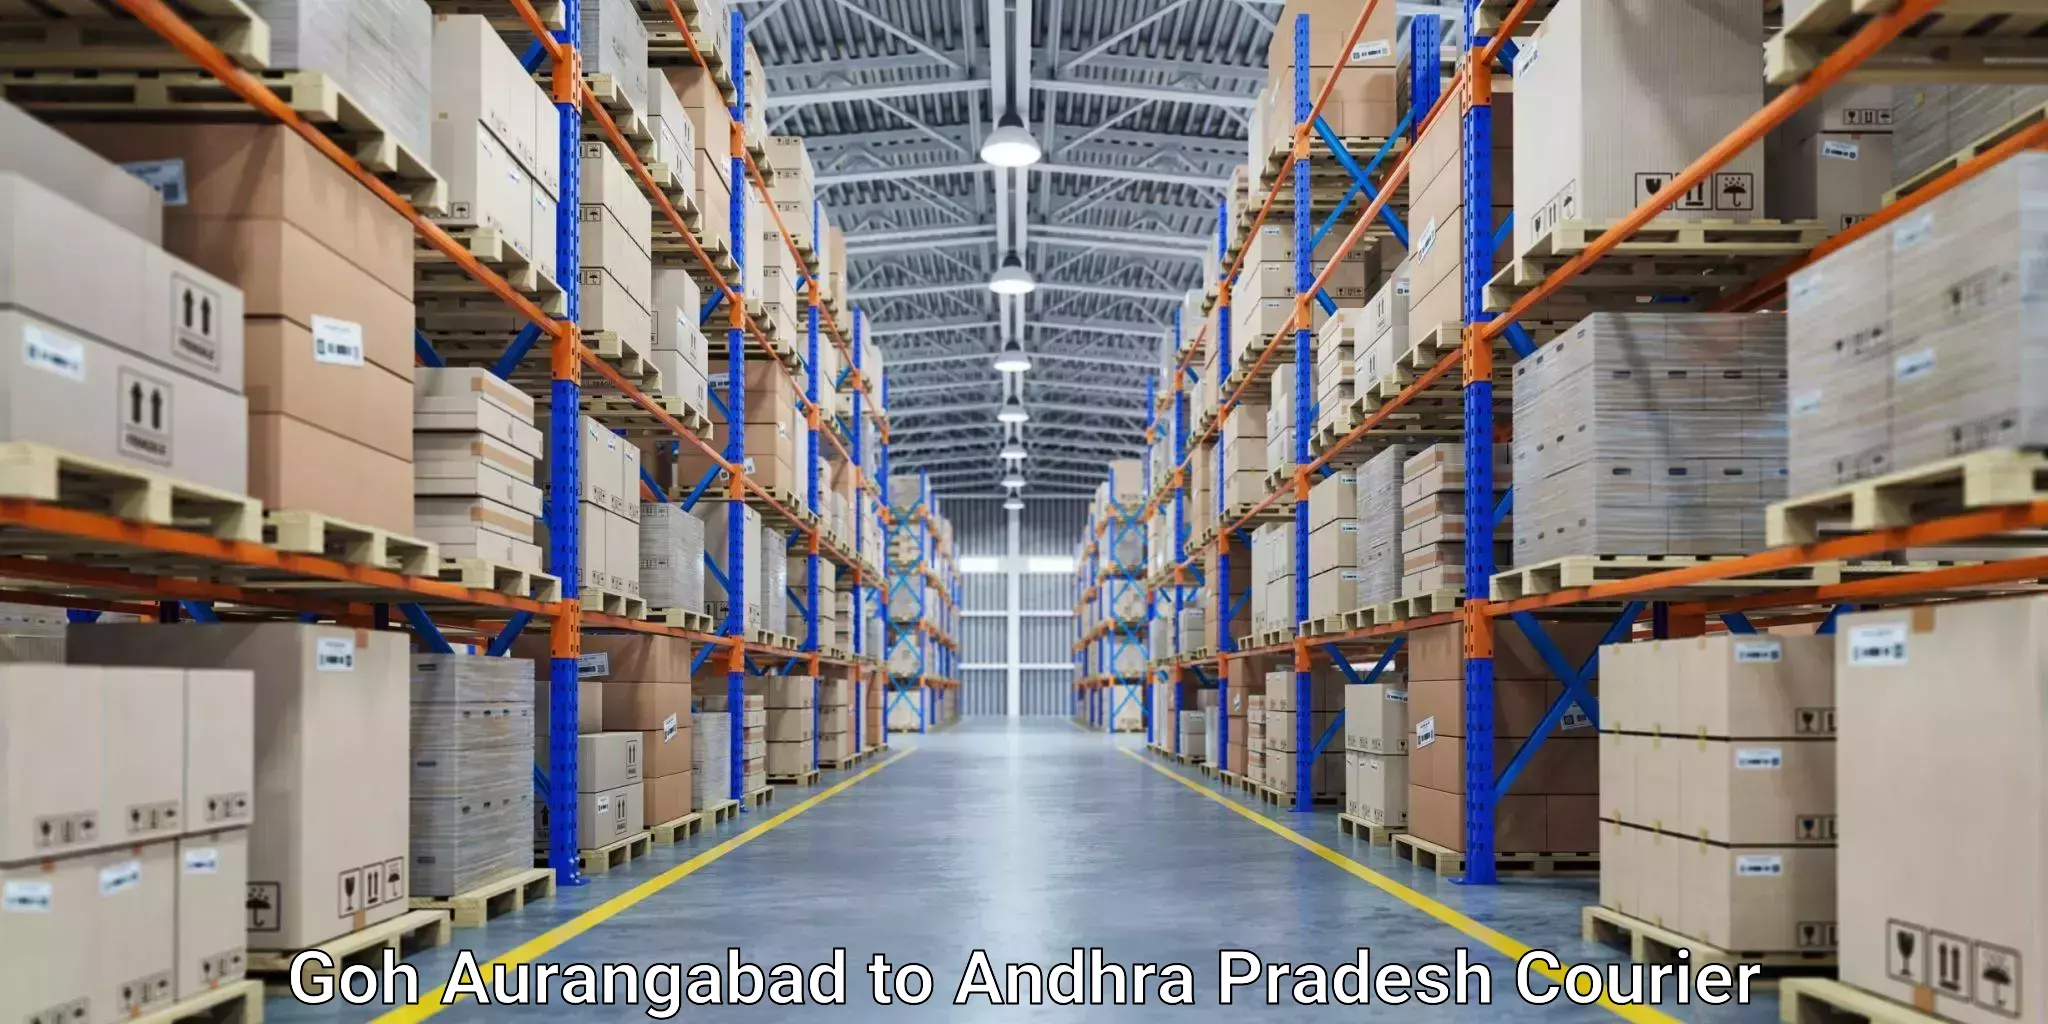 Customer-centric shipping in Goh Aurangabad to Vempalli